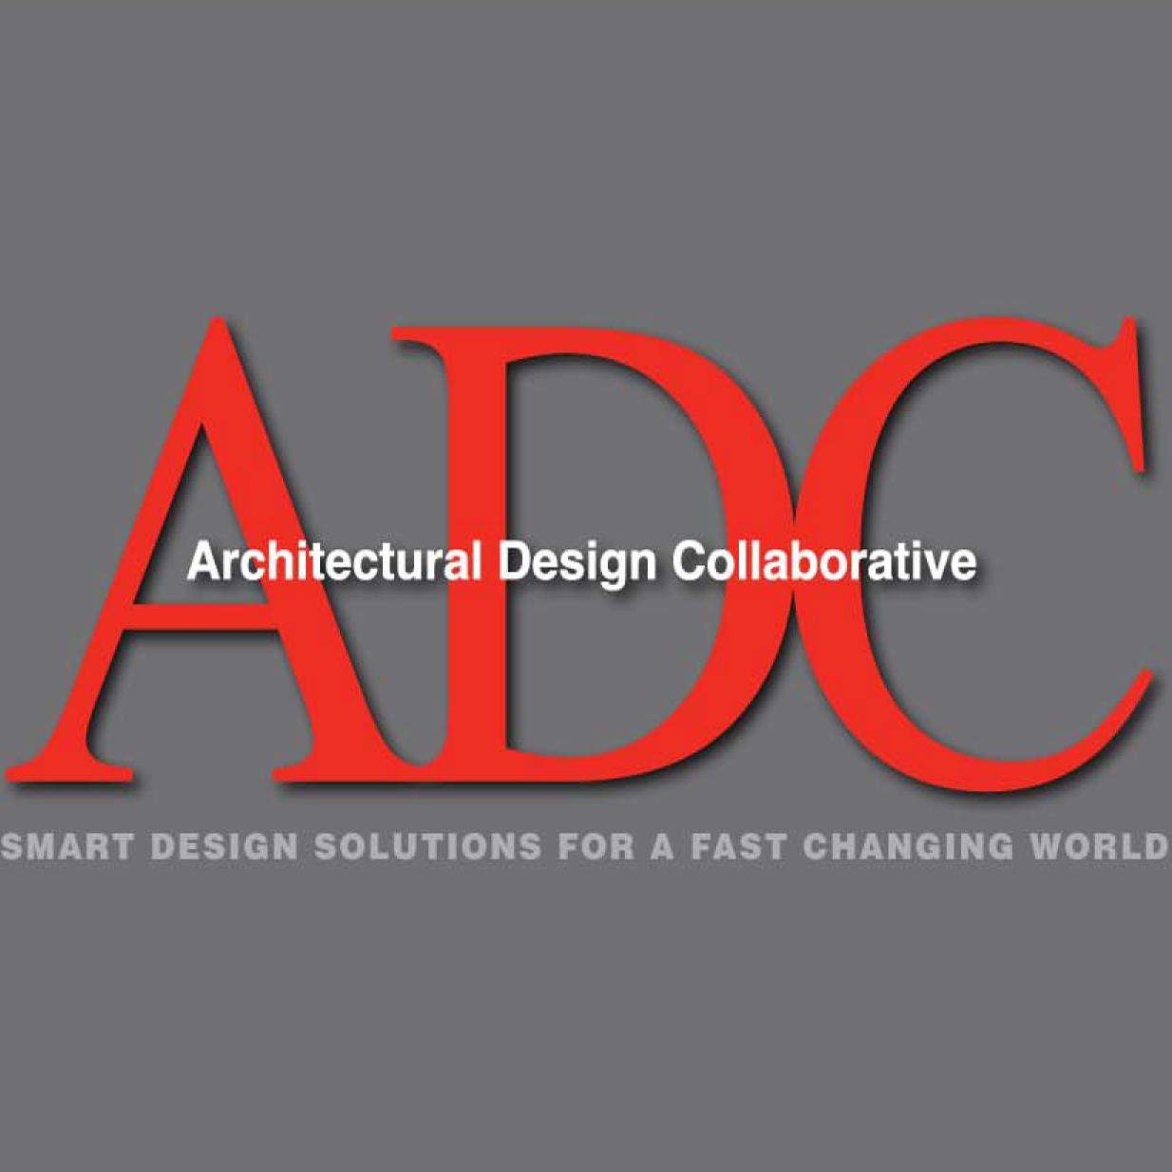 architectural design collaborative Bulan 2 Architectural Design Collaborative - Crunchbase Company Profile